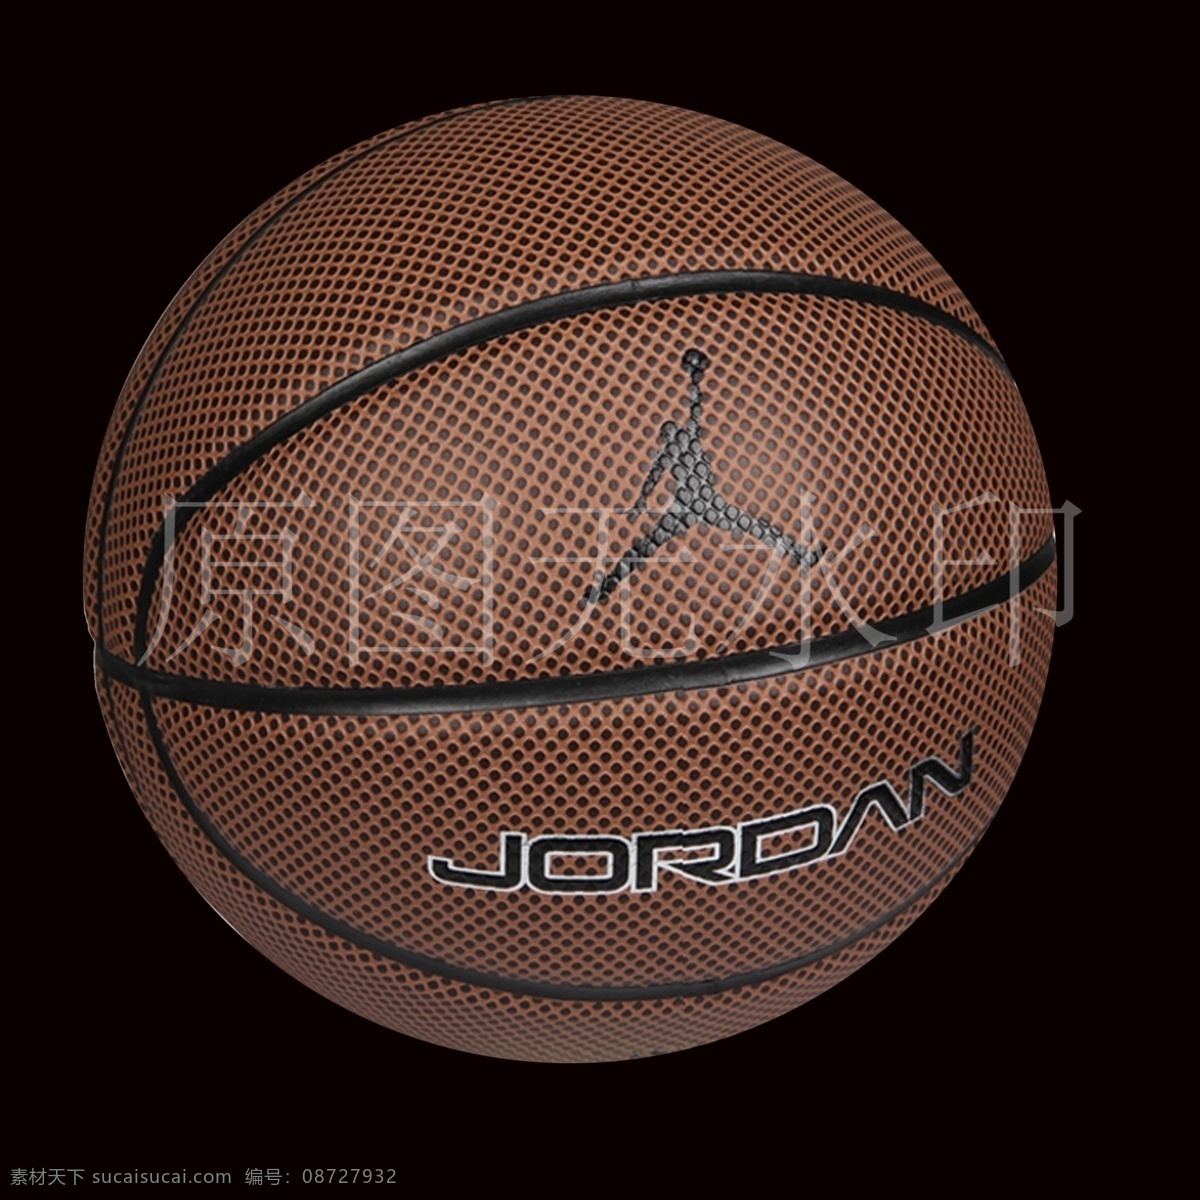 分层 篮球 耐克 乔丹 体育器材 体育运动 源文件 耐克篮球 jordan legacy 乔丹篮球 男子篮球 psd源文件